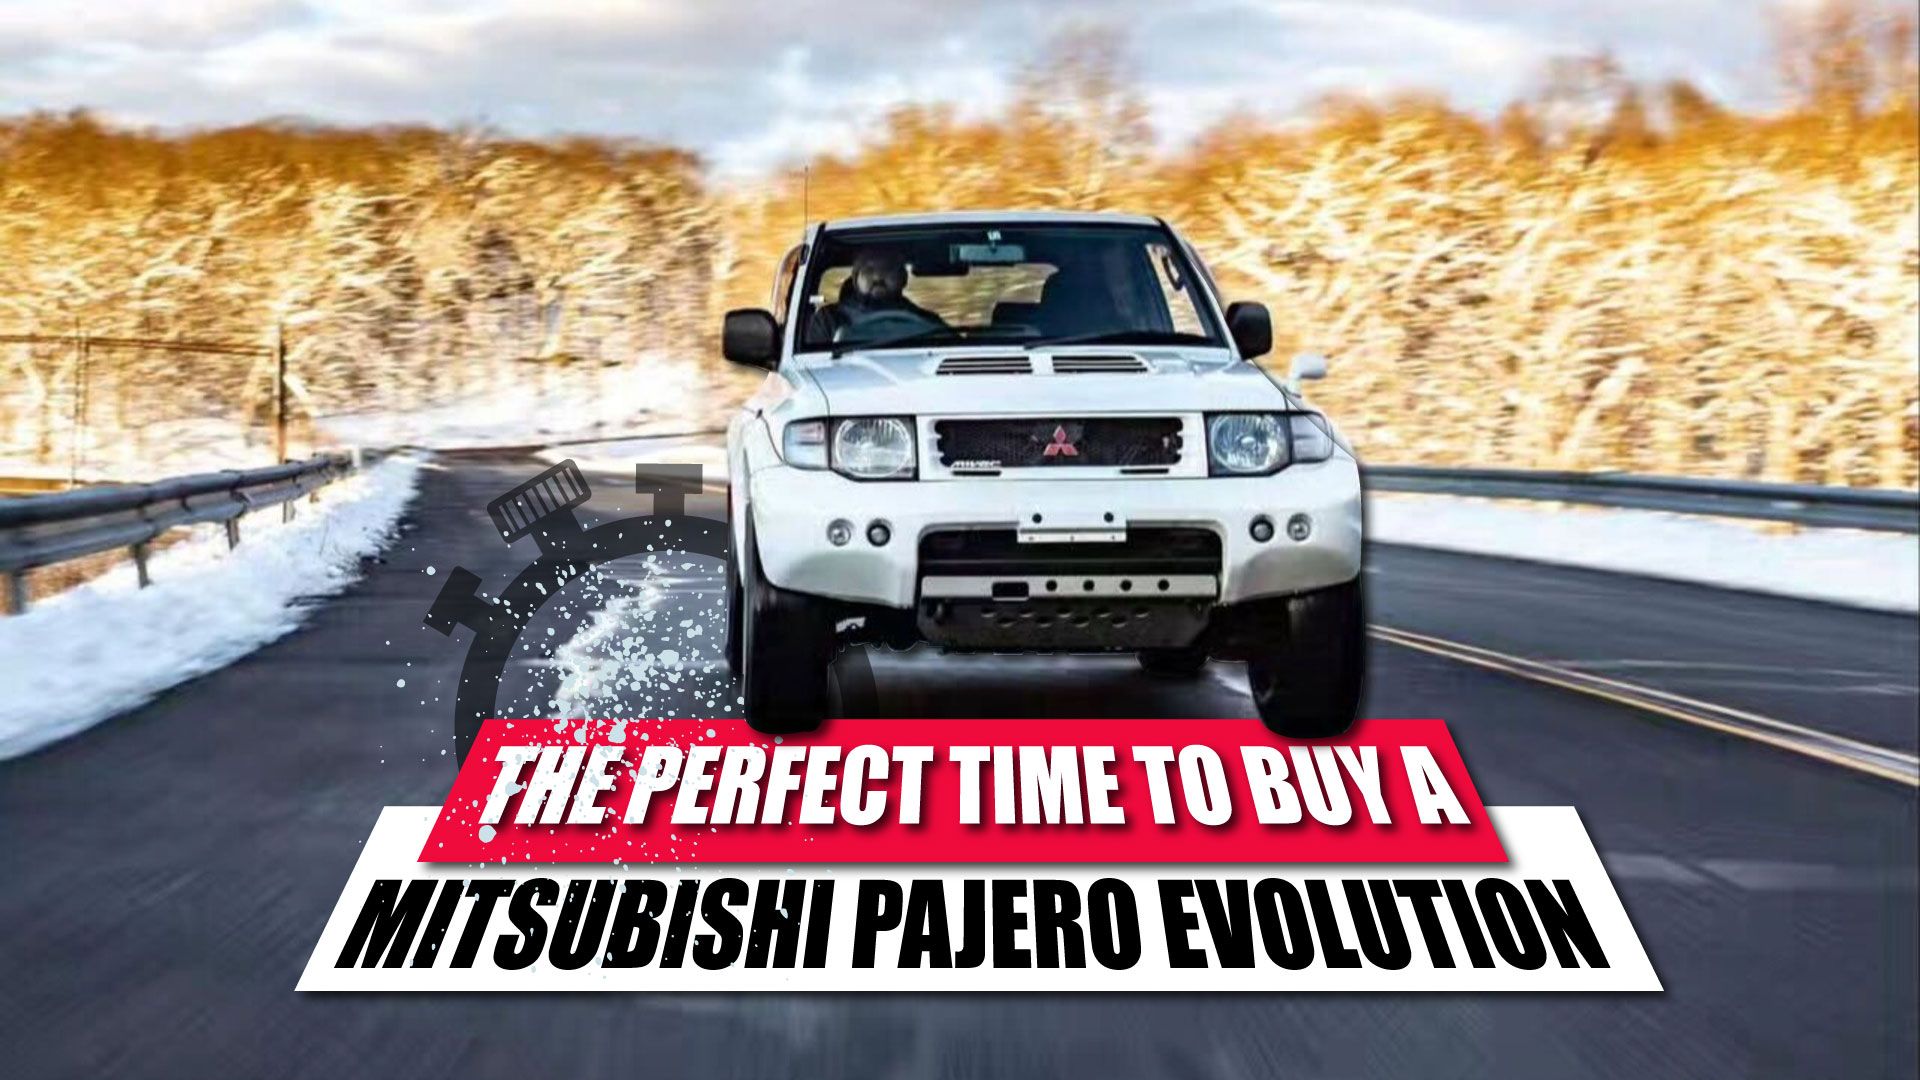 Mitsubishi Pajero Evolution Featured Image